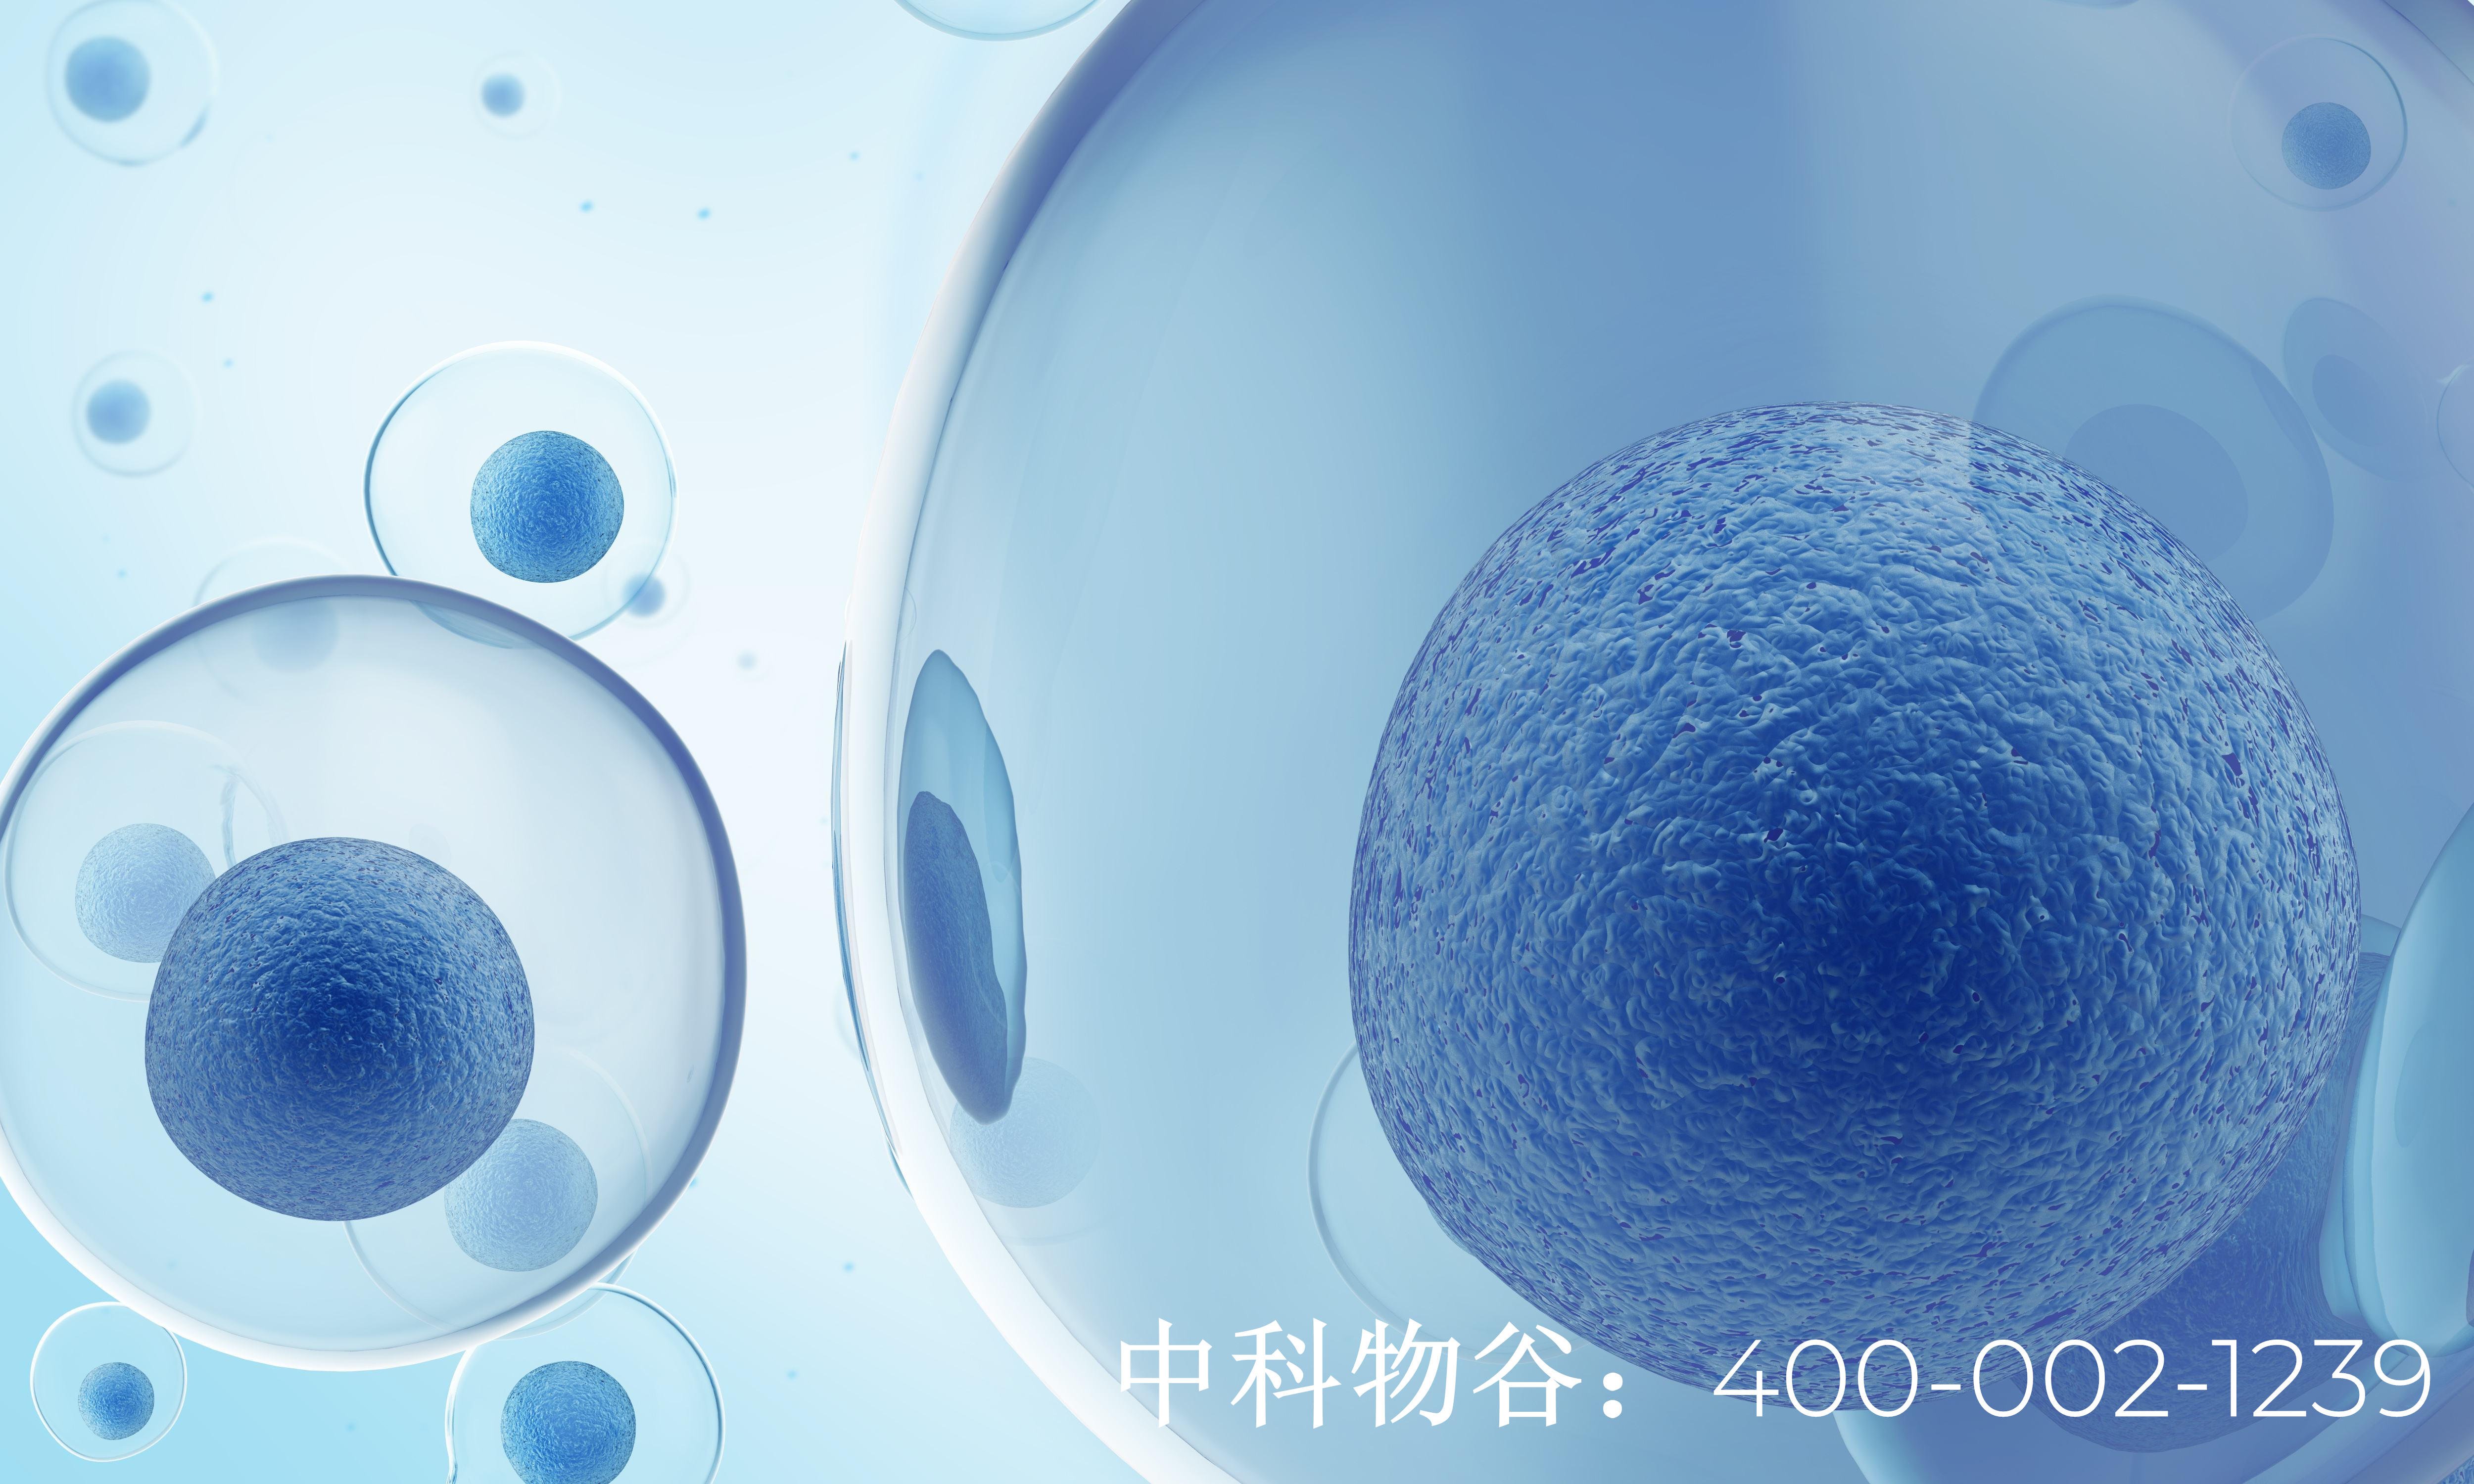 中國七大干細胞庫都是